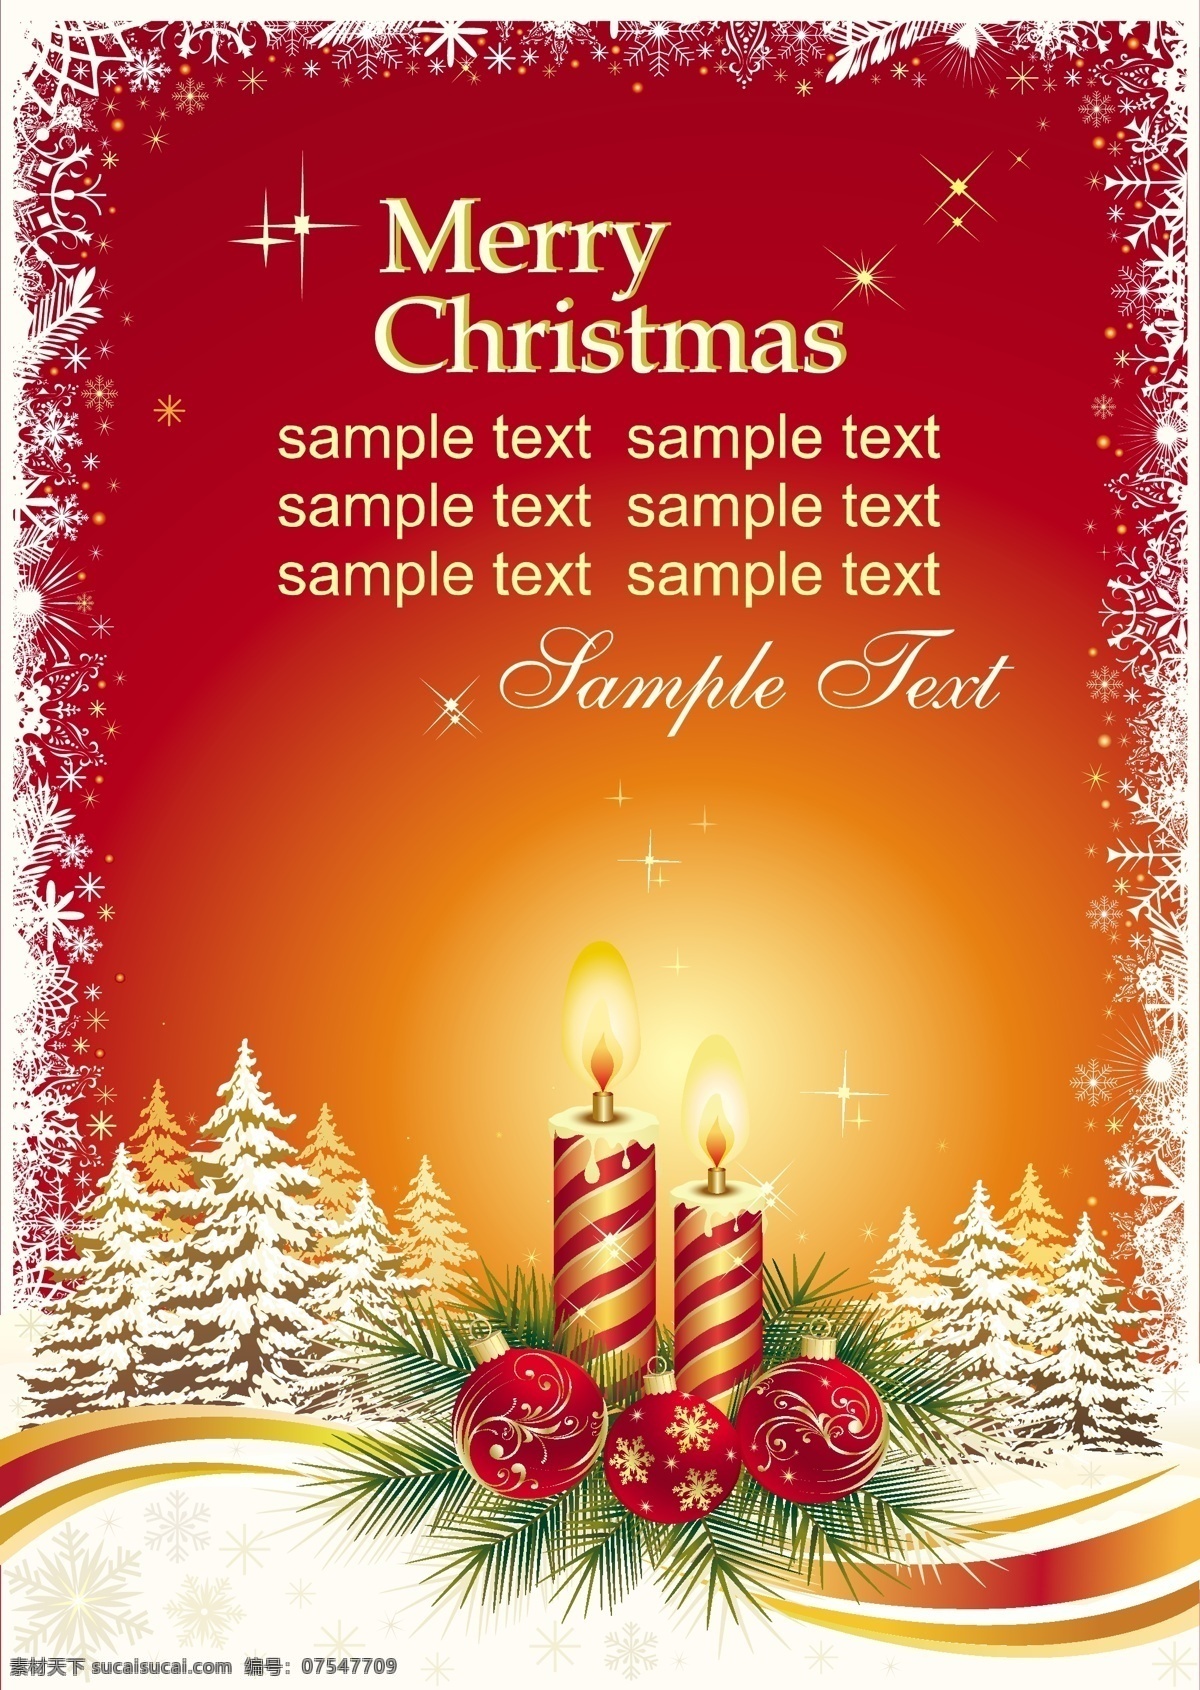 欢乐 圣诞节 文本 框 模板 矢量 贺卡 节日 蜡烛 明信片 文本框 挂球 节日素材